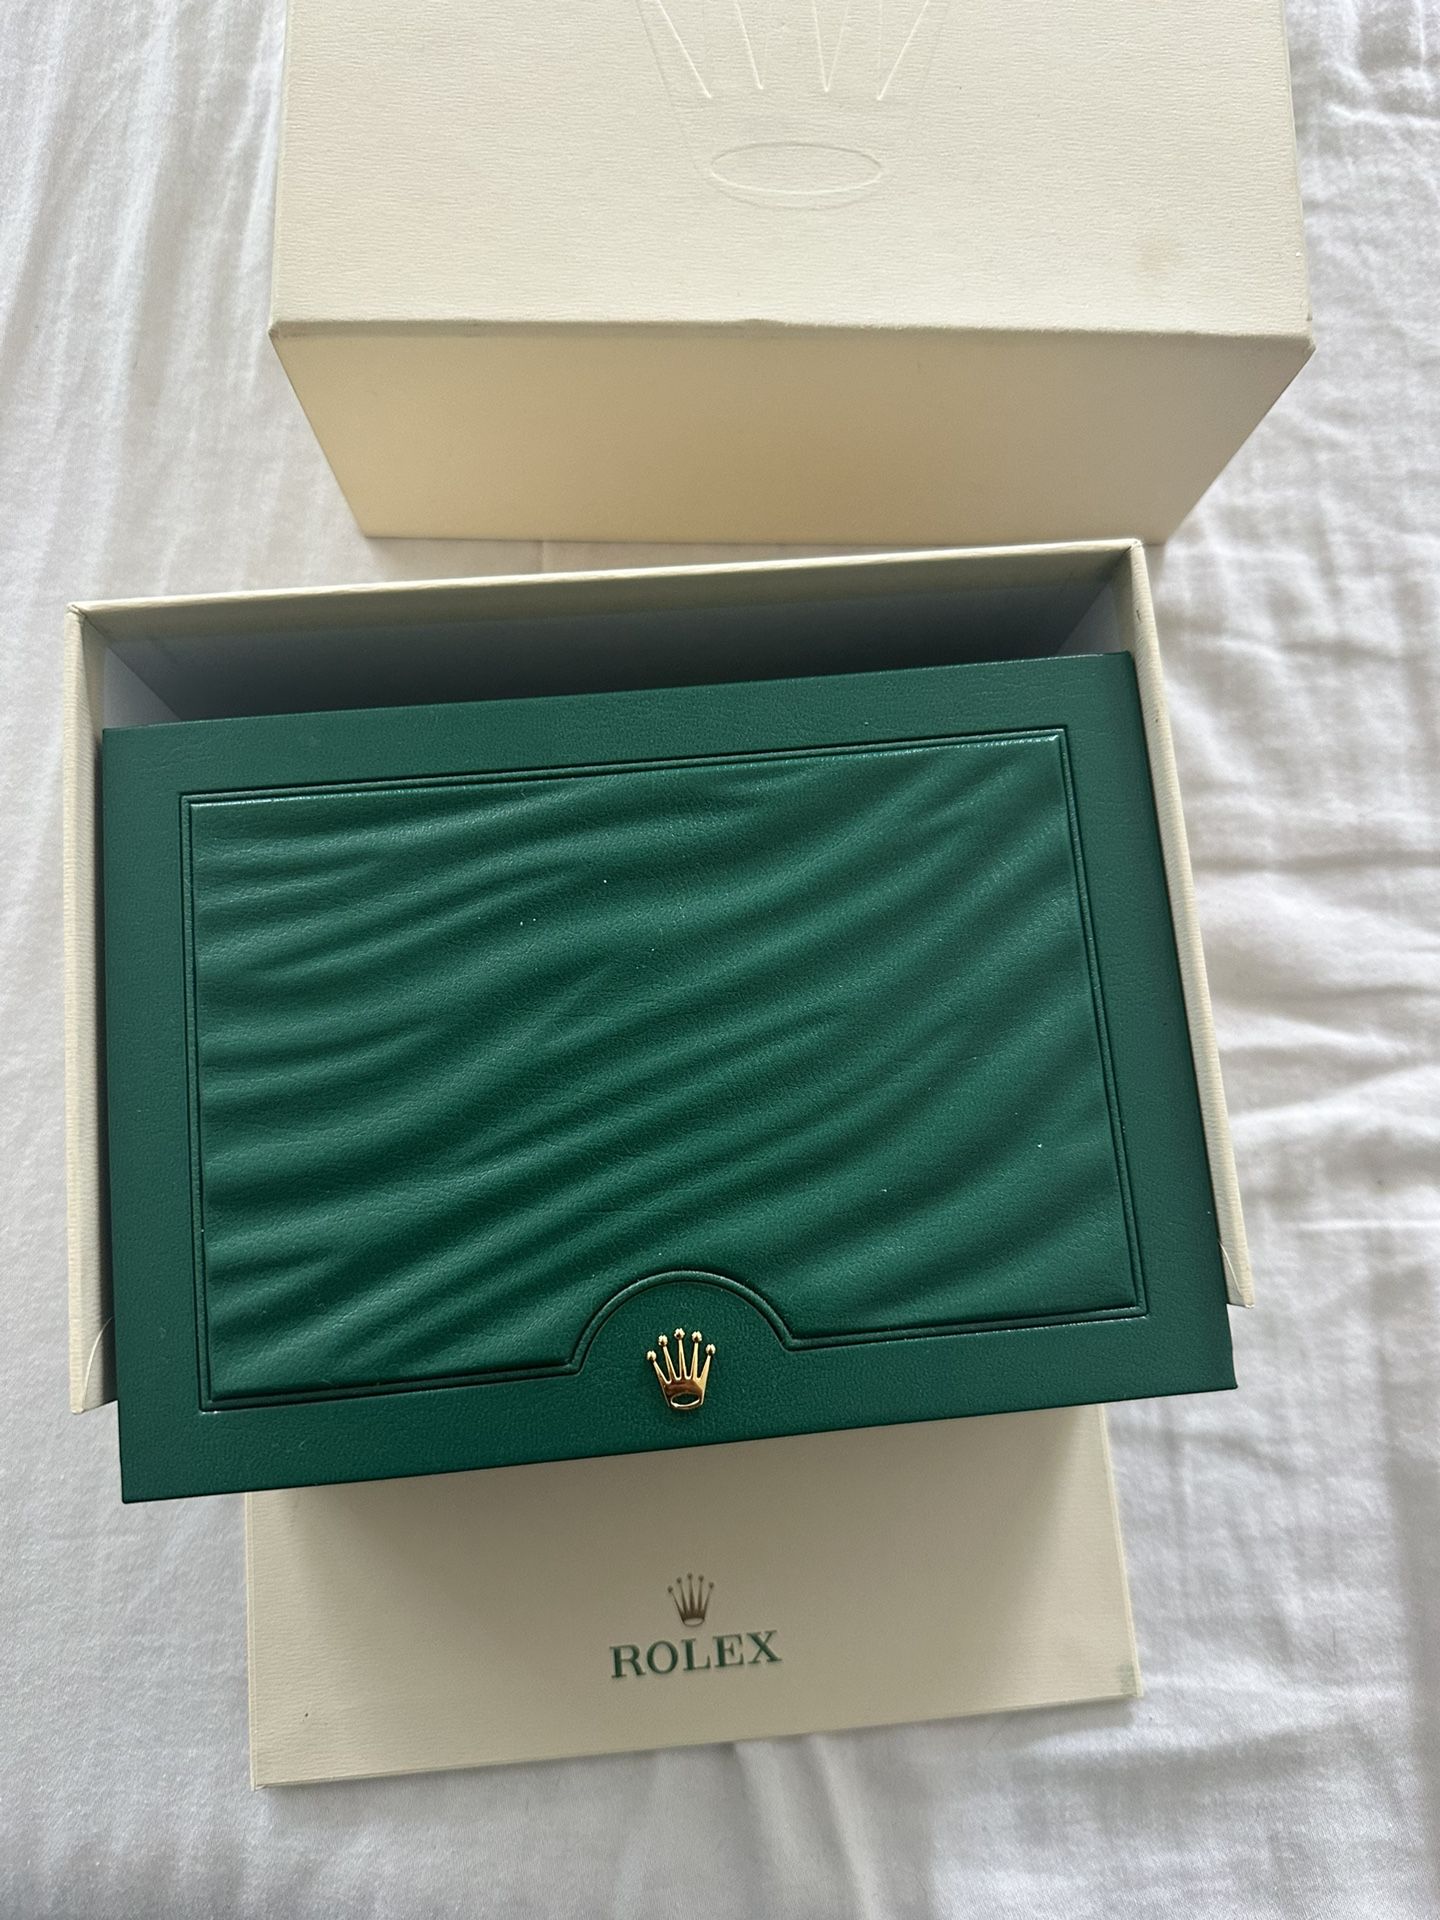 Authentic Rolex Box 